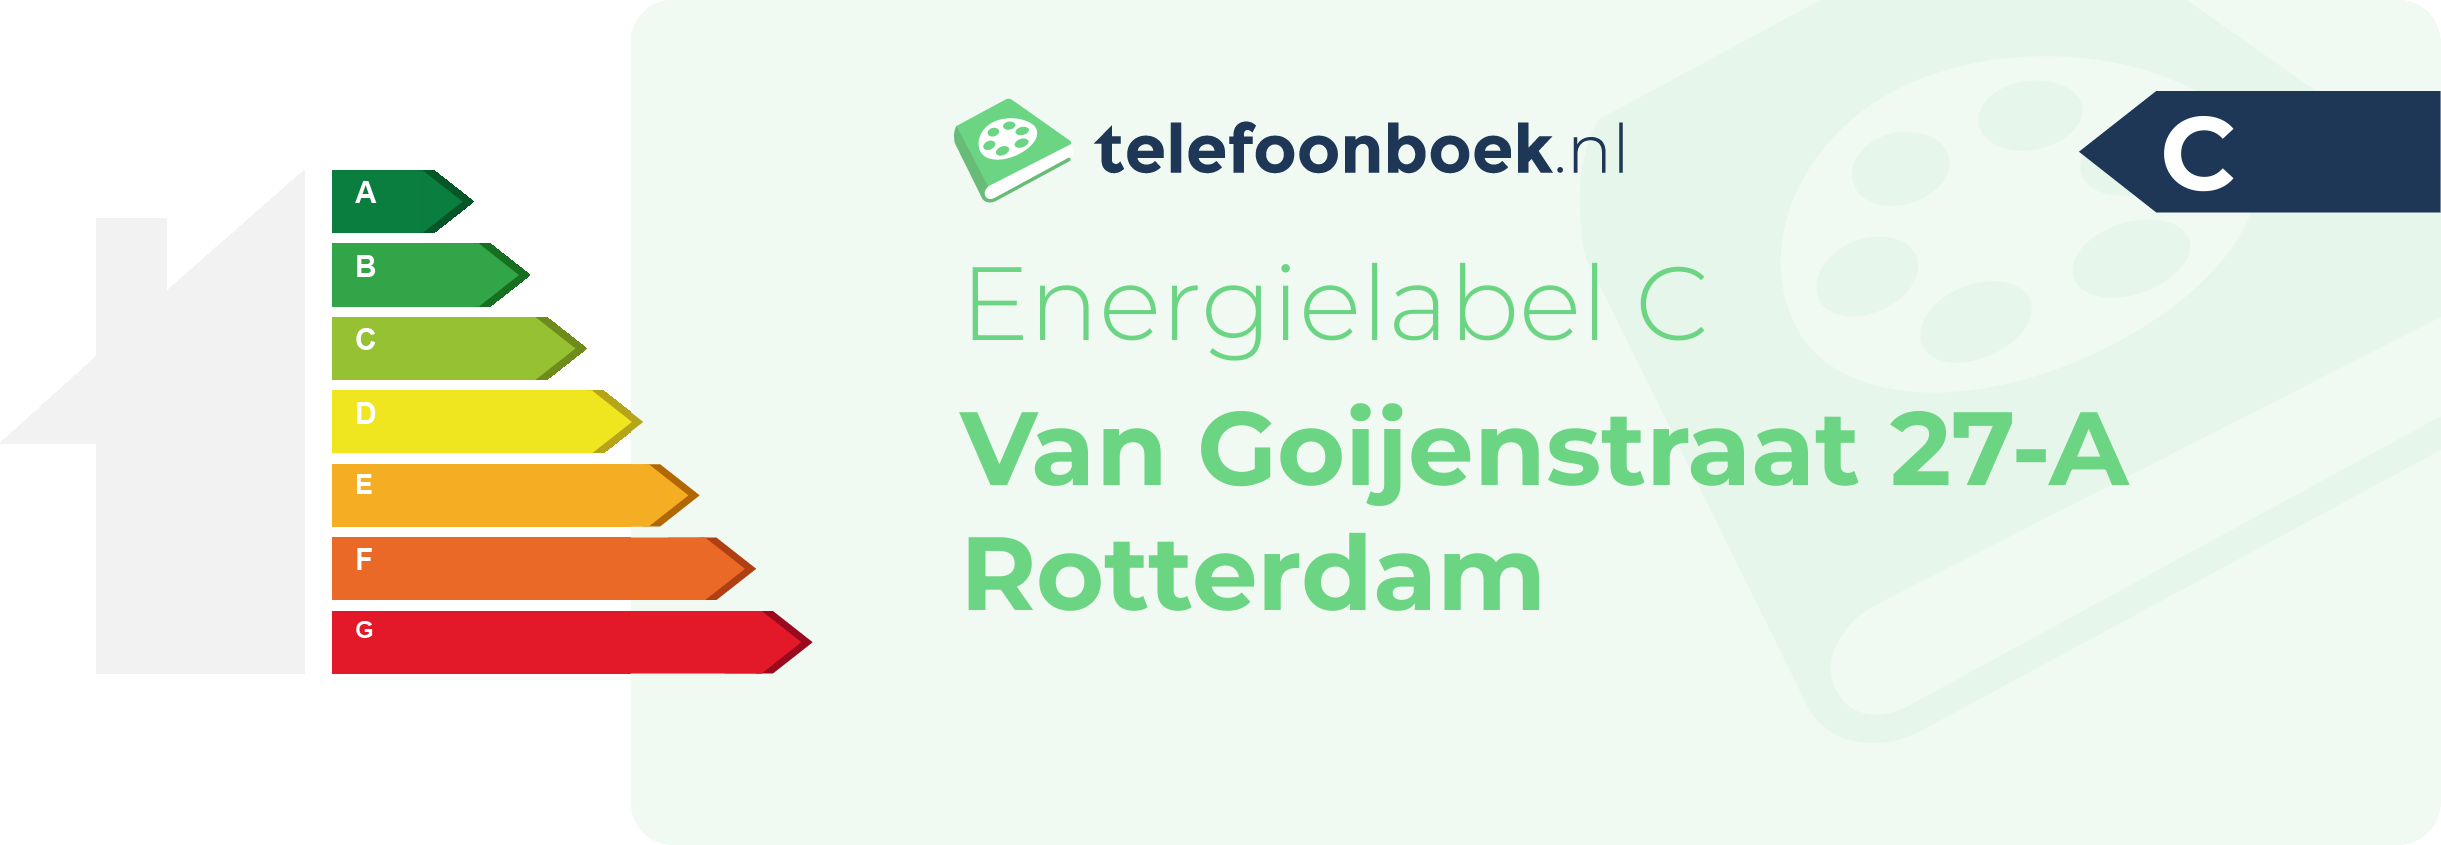 Energielabel Van Goijenstraat 27-A Rotterdam